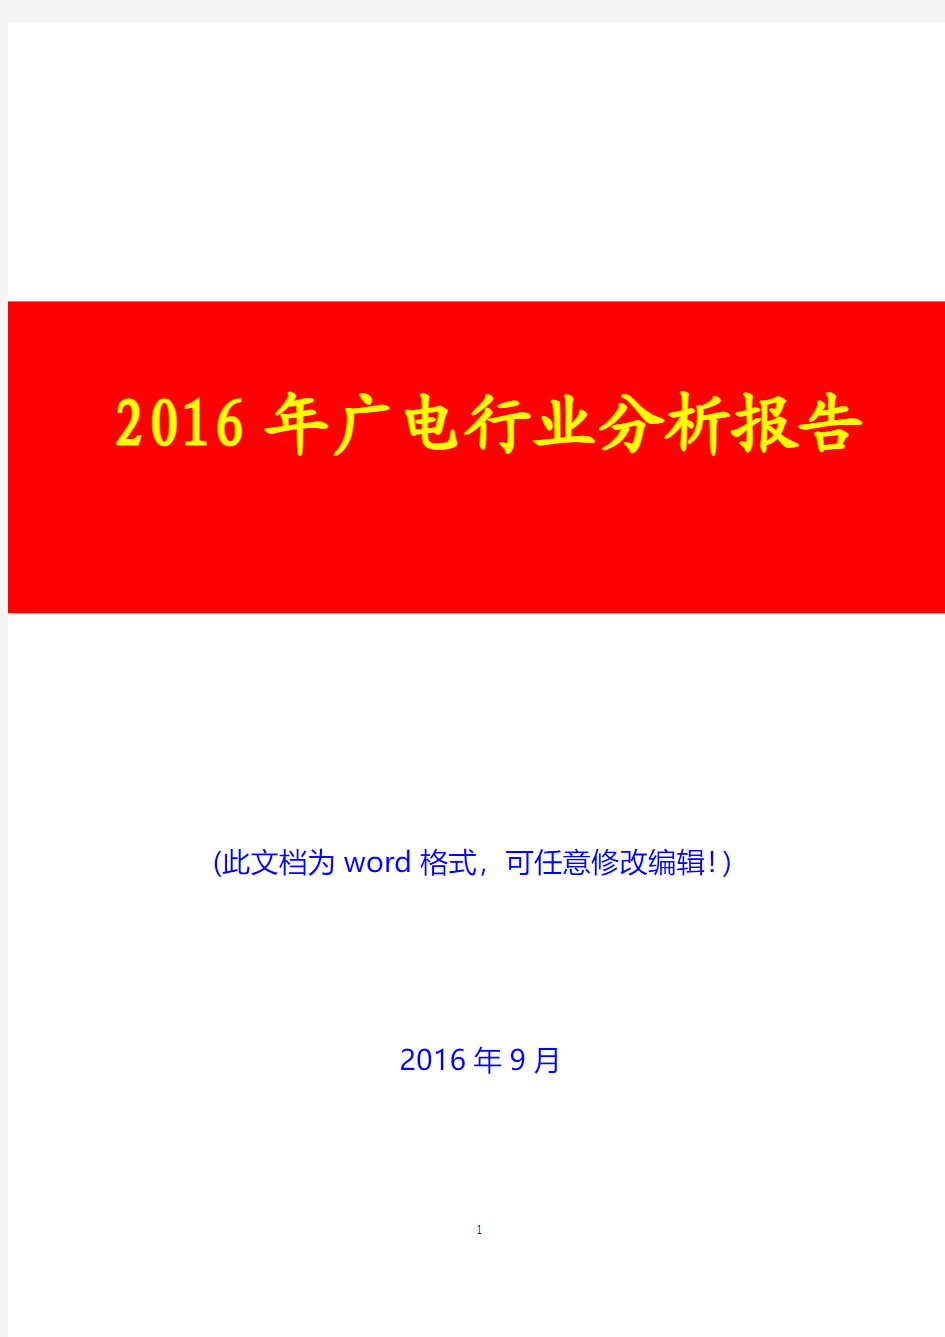 2016年广电行业分析报告